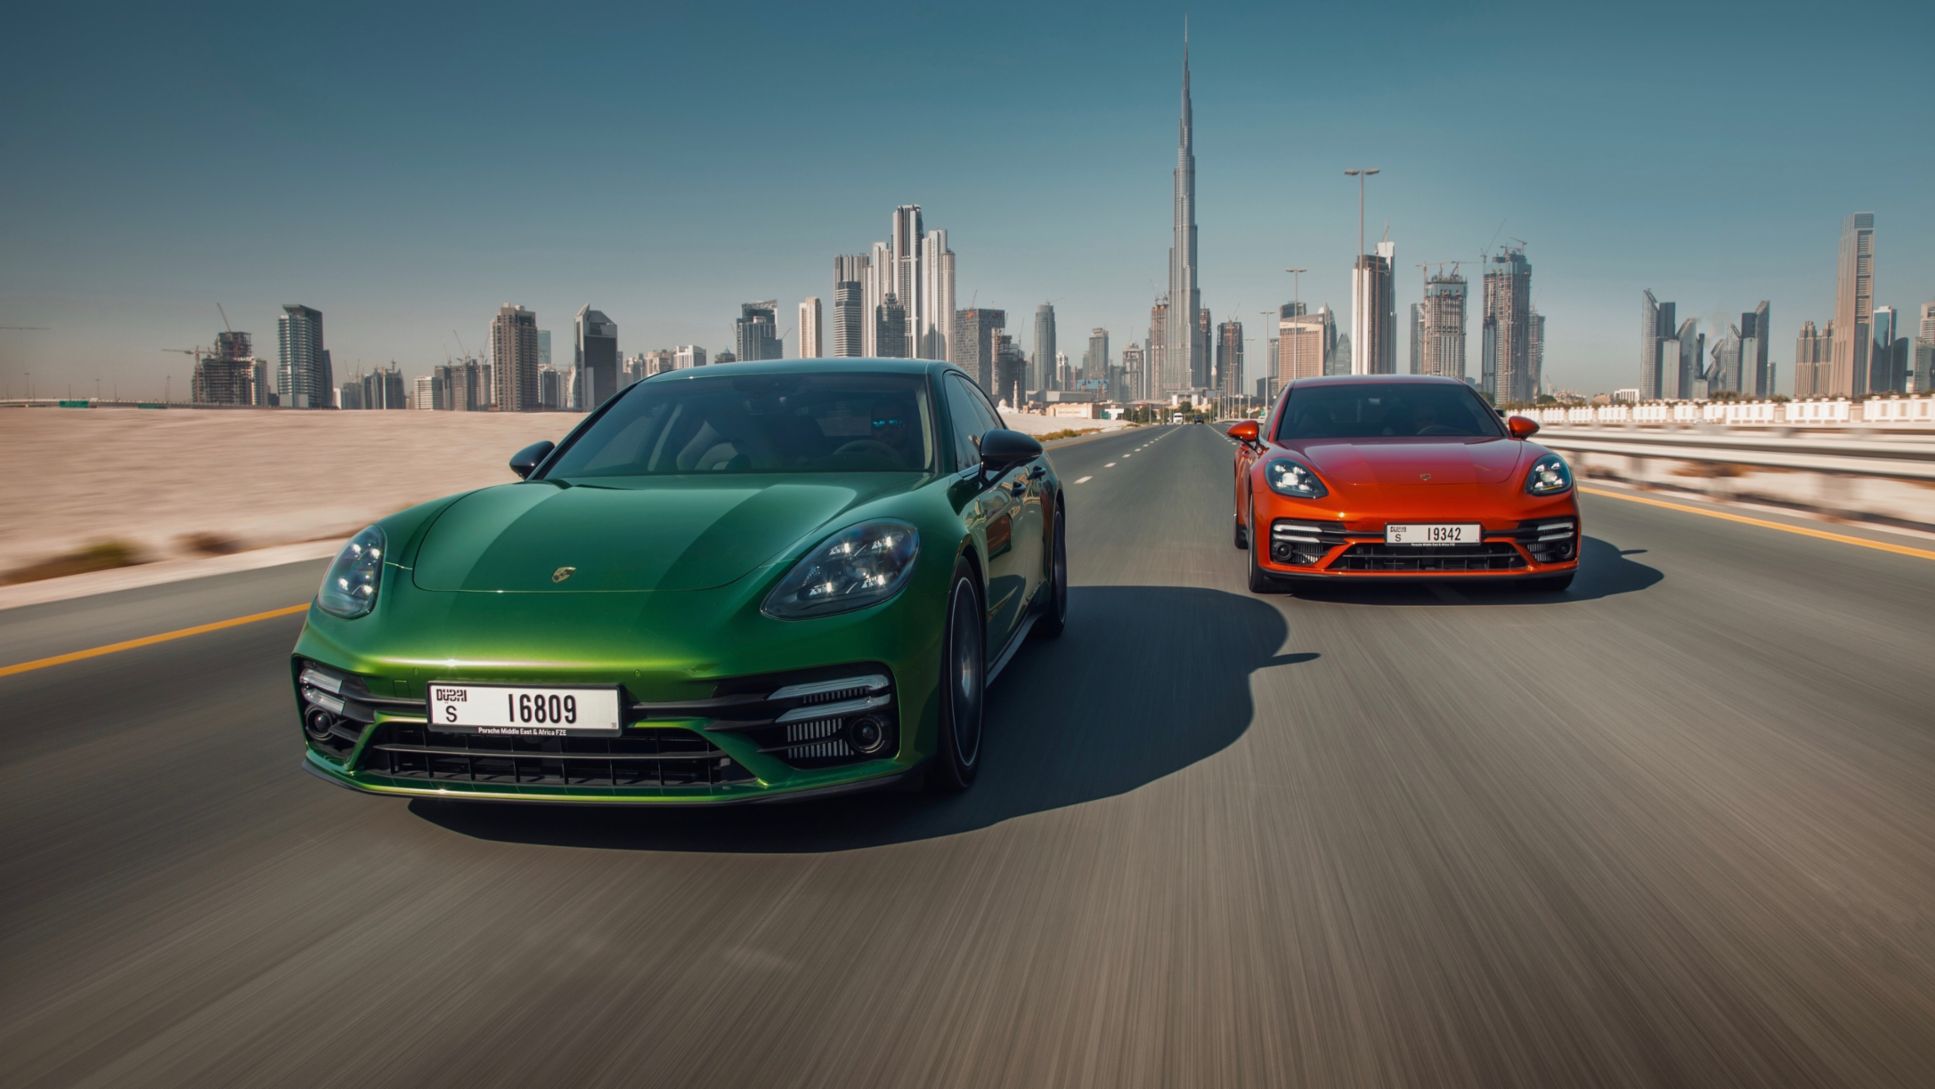 Panamera Turbo S, Dubai, United Arab Emirates, 2020, Porsche AG